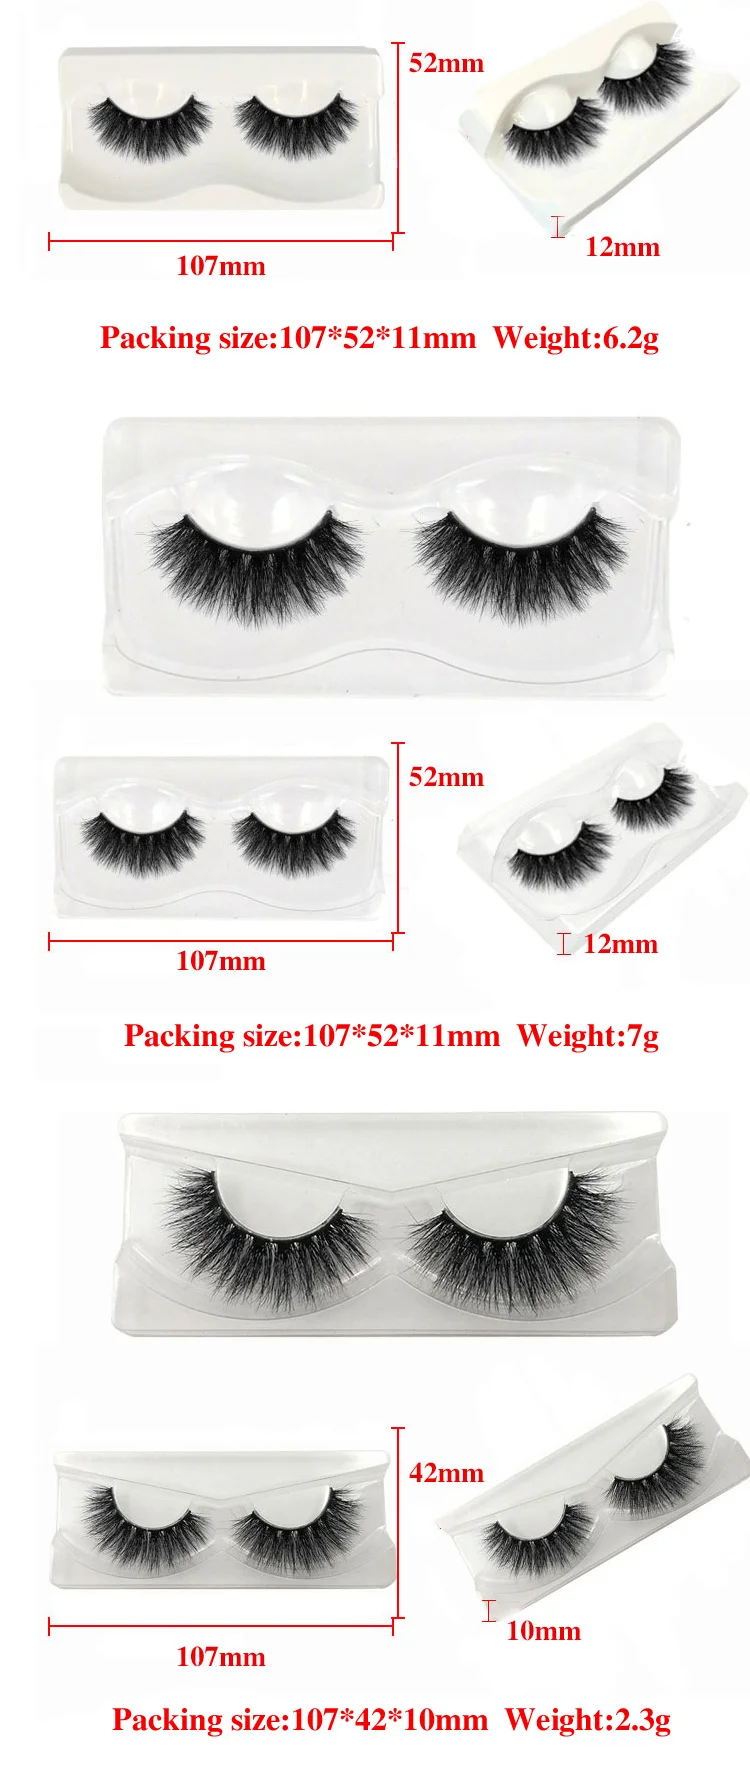 IflovedekdCreate свой собственный бренд 3d норки eyelashe натуральные длинные накладные ресницы, фирменная торговая марка по индивидуальному заказу упаковочная коробка